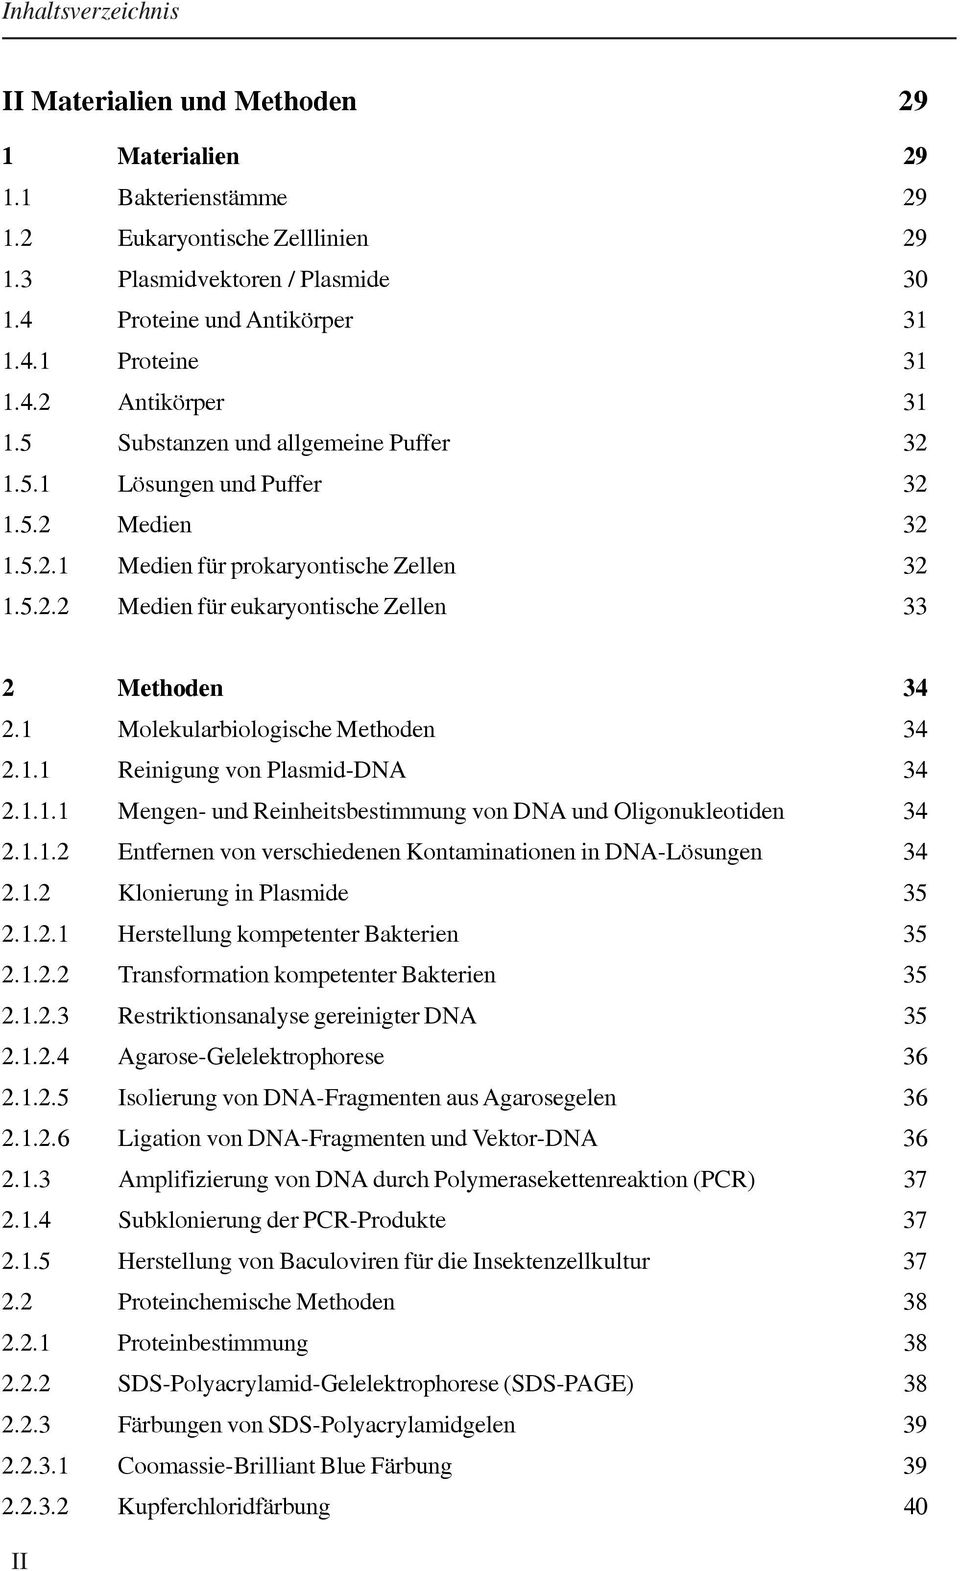 1 Molekularbiologische Methoden 34 2.1.1 Reinigung von Plasmid-DNA 34 2.1.1.1 Mengen- und Reinheitsbestimmung von DNA und Oligonukleotiden 34 2.1.1.2 Entfernen von verschiedenen Kontaminationen in DNA-Lösungen 34 2.